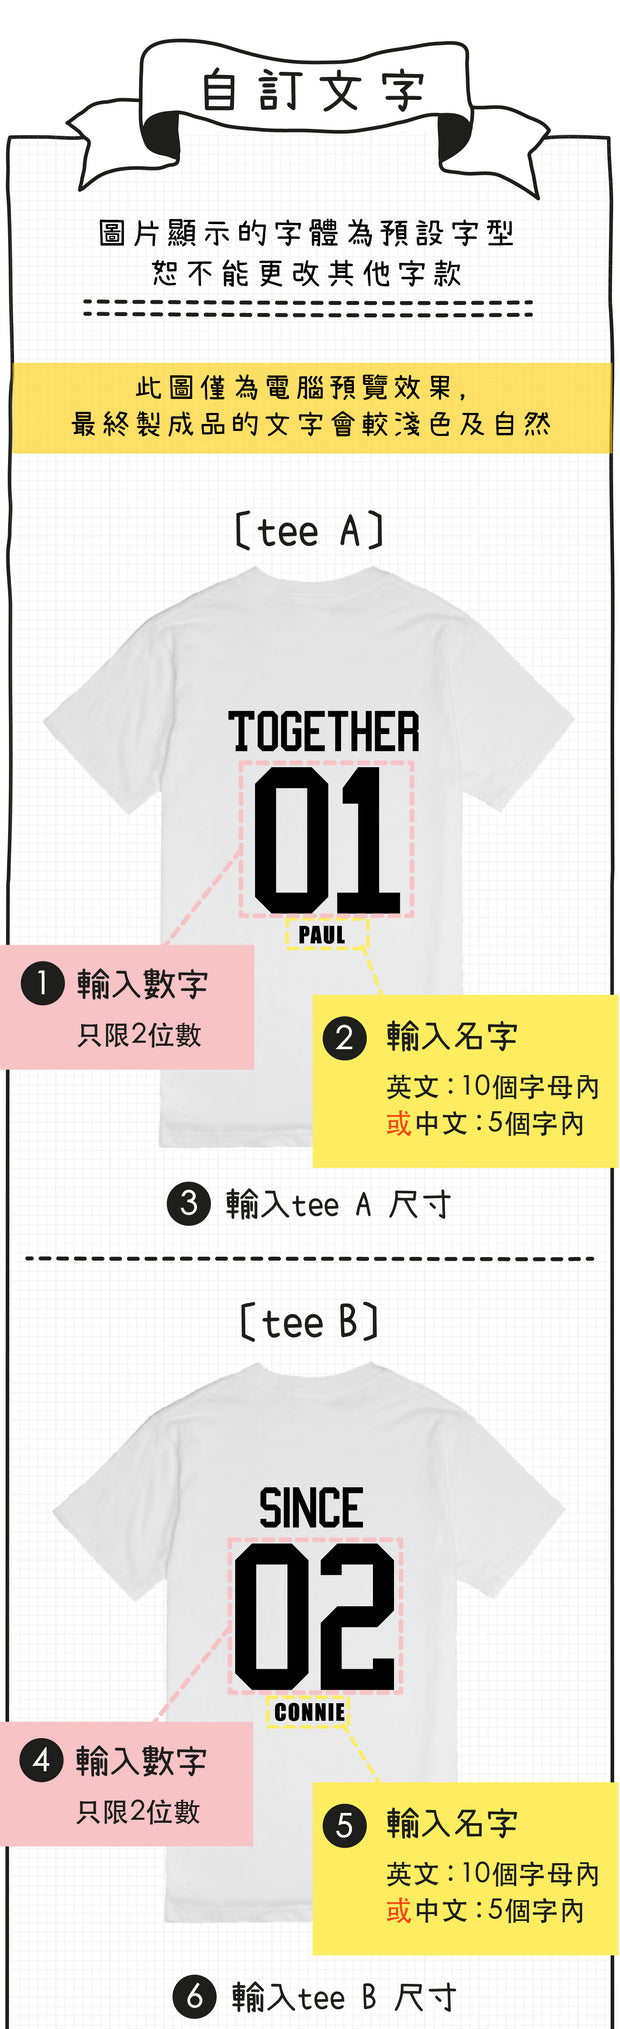 親子裝 T-shirt | Together Since紀念日